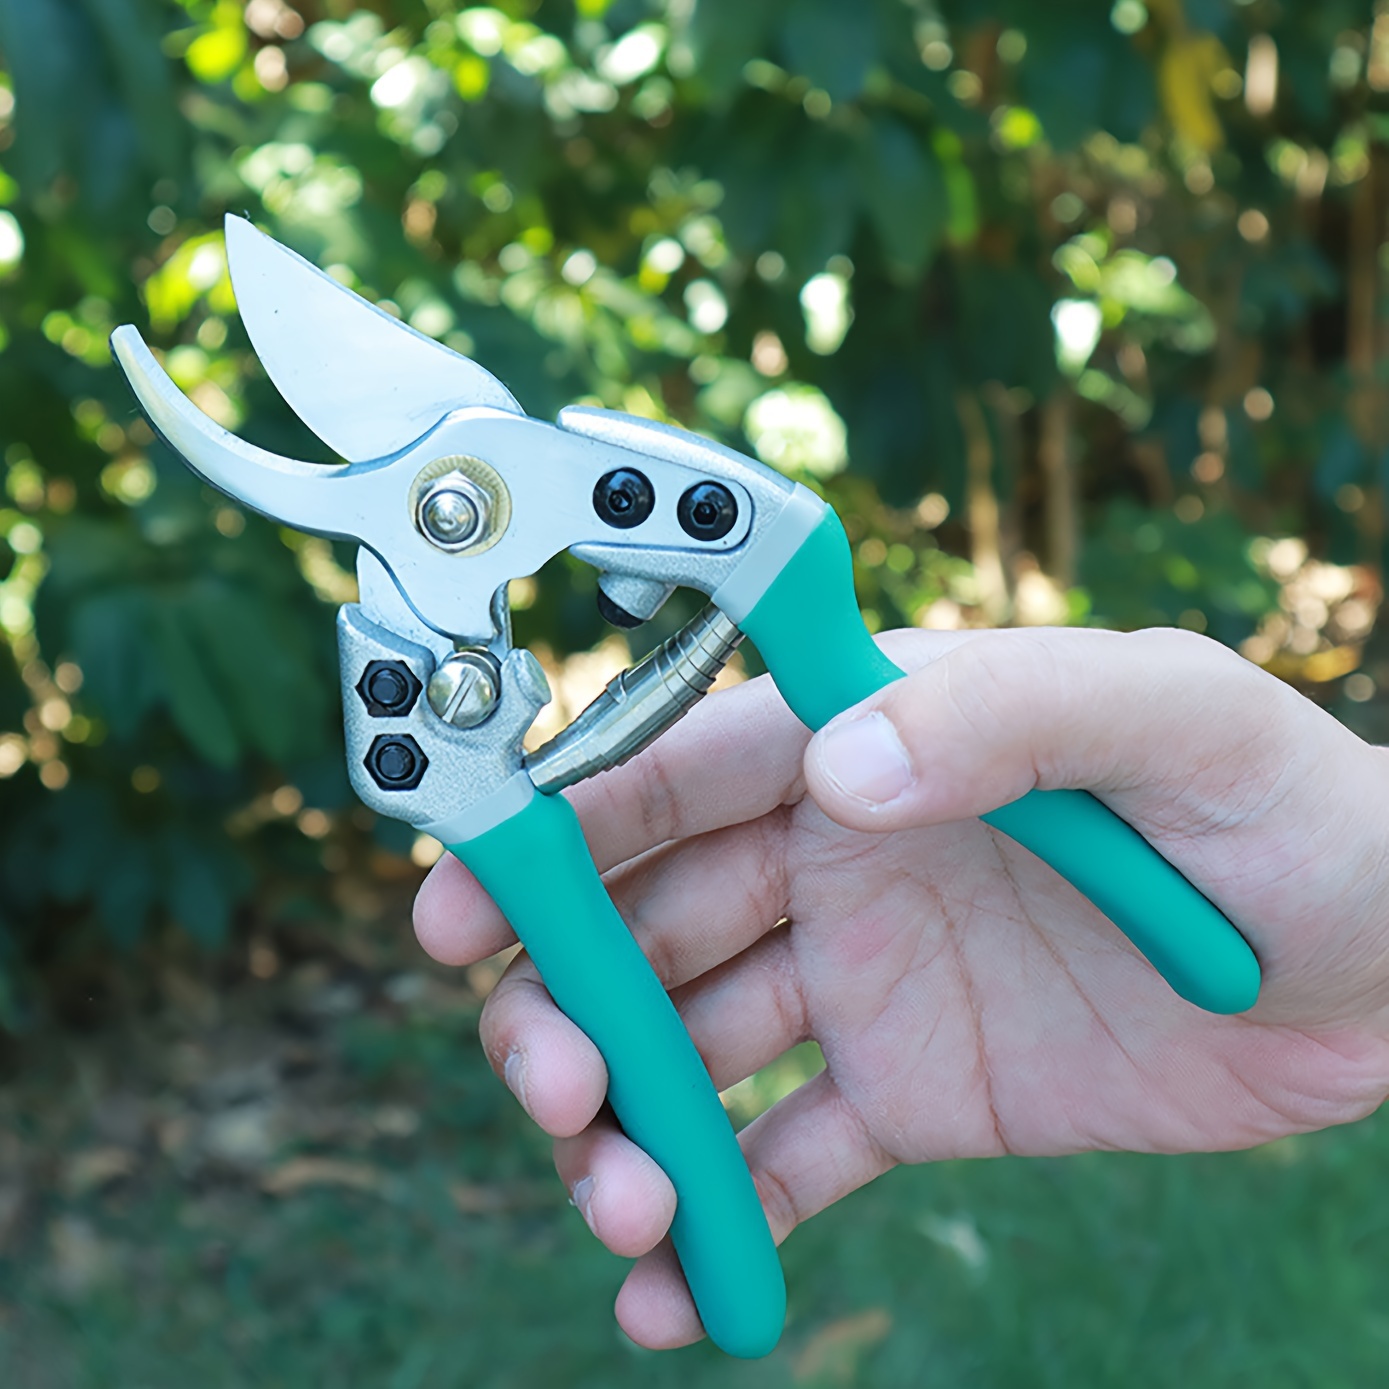 Secateurs Gardening Scissors, Heavy Duty Pruning Shears Gardening Scissors  For Cutting And Trimming Tree Branch, Herb, Rose, Flower - Temu